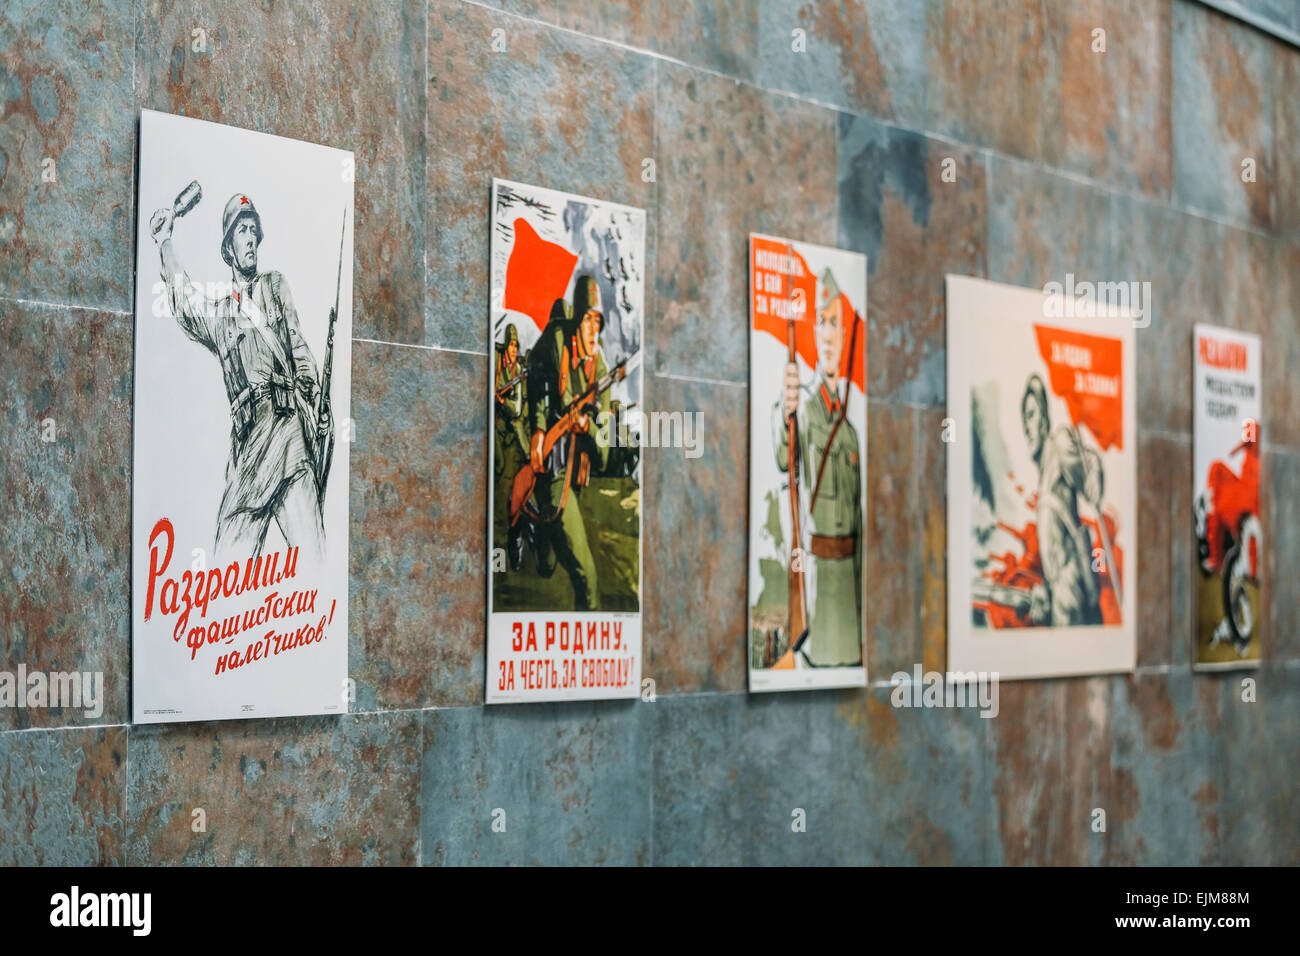 Belarusian Museum Of The Great Patriotic War. Minsk, Belarus. Soviet patriotic propaganda posters of World War II Stock Photo